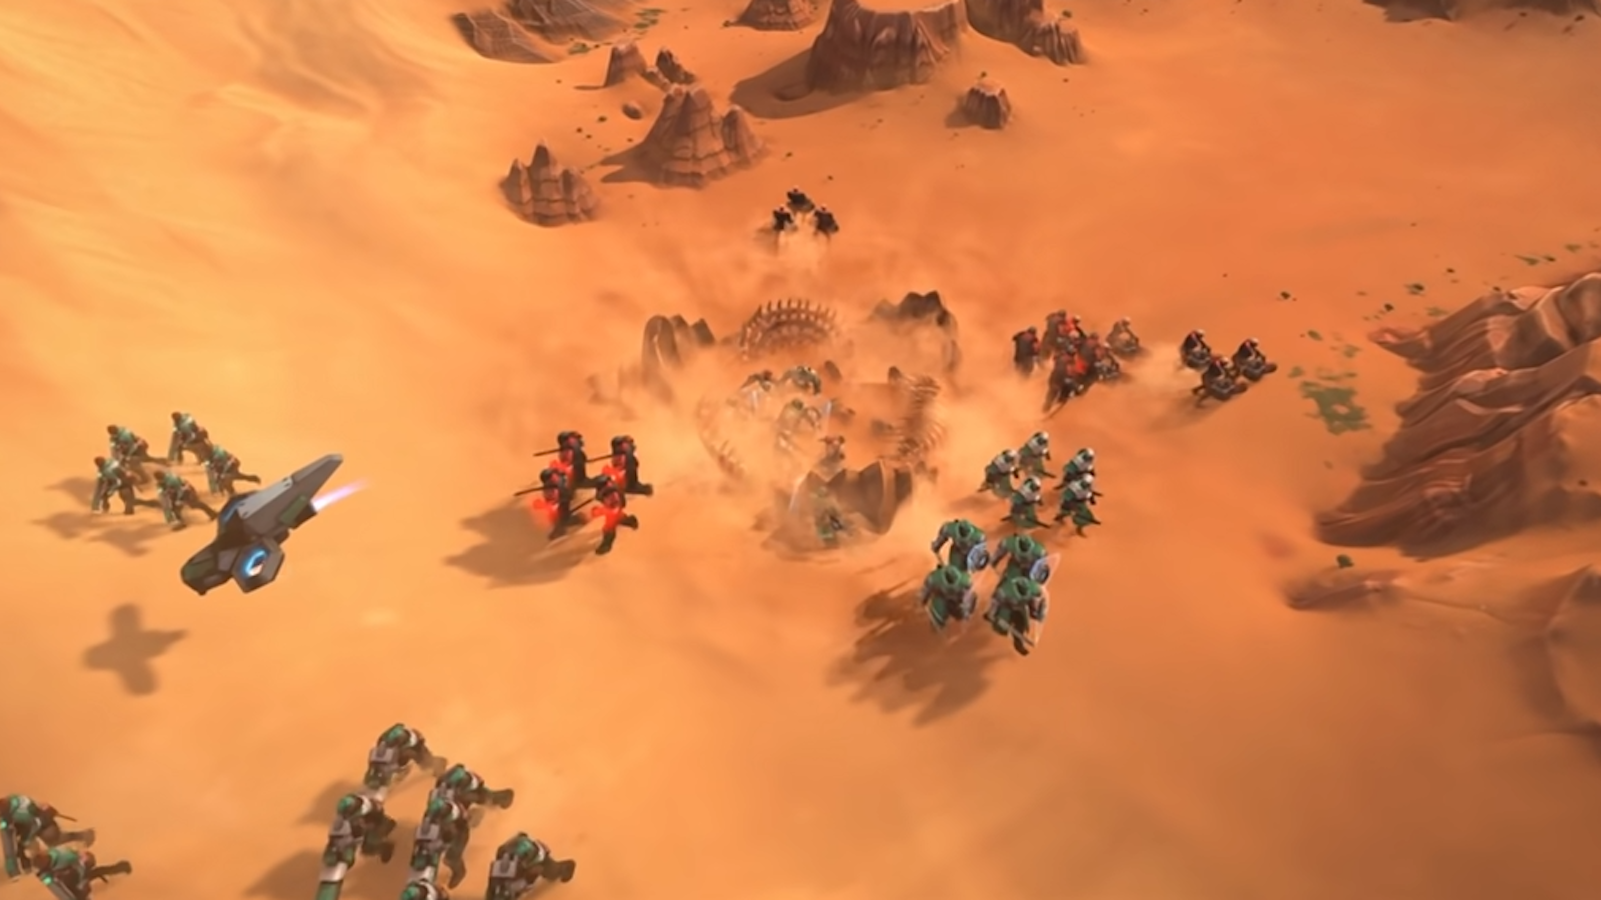 dune gameplay trailer spice wars